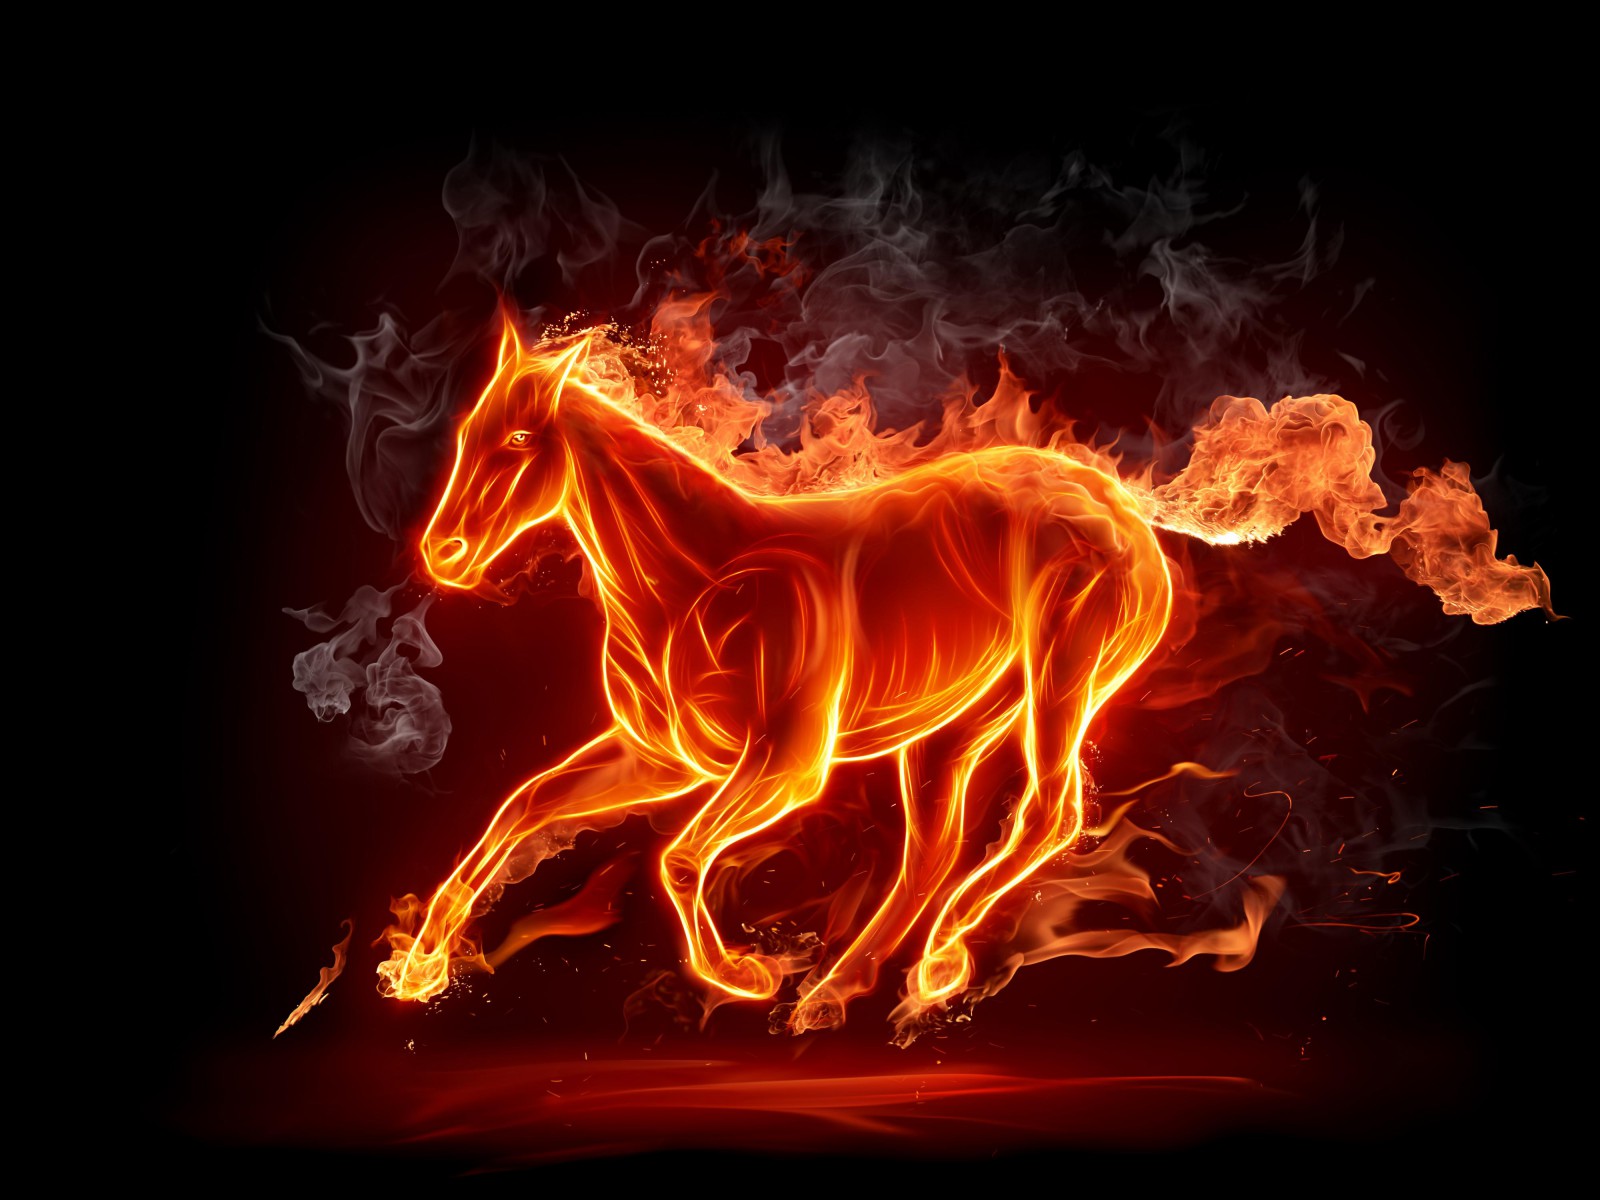 Fire Horse Image Photos